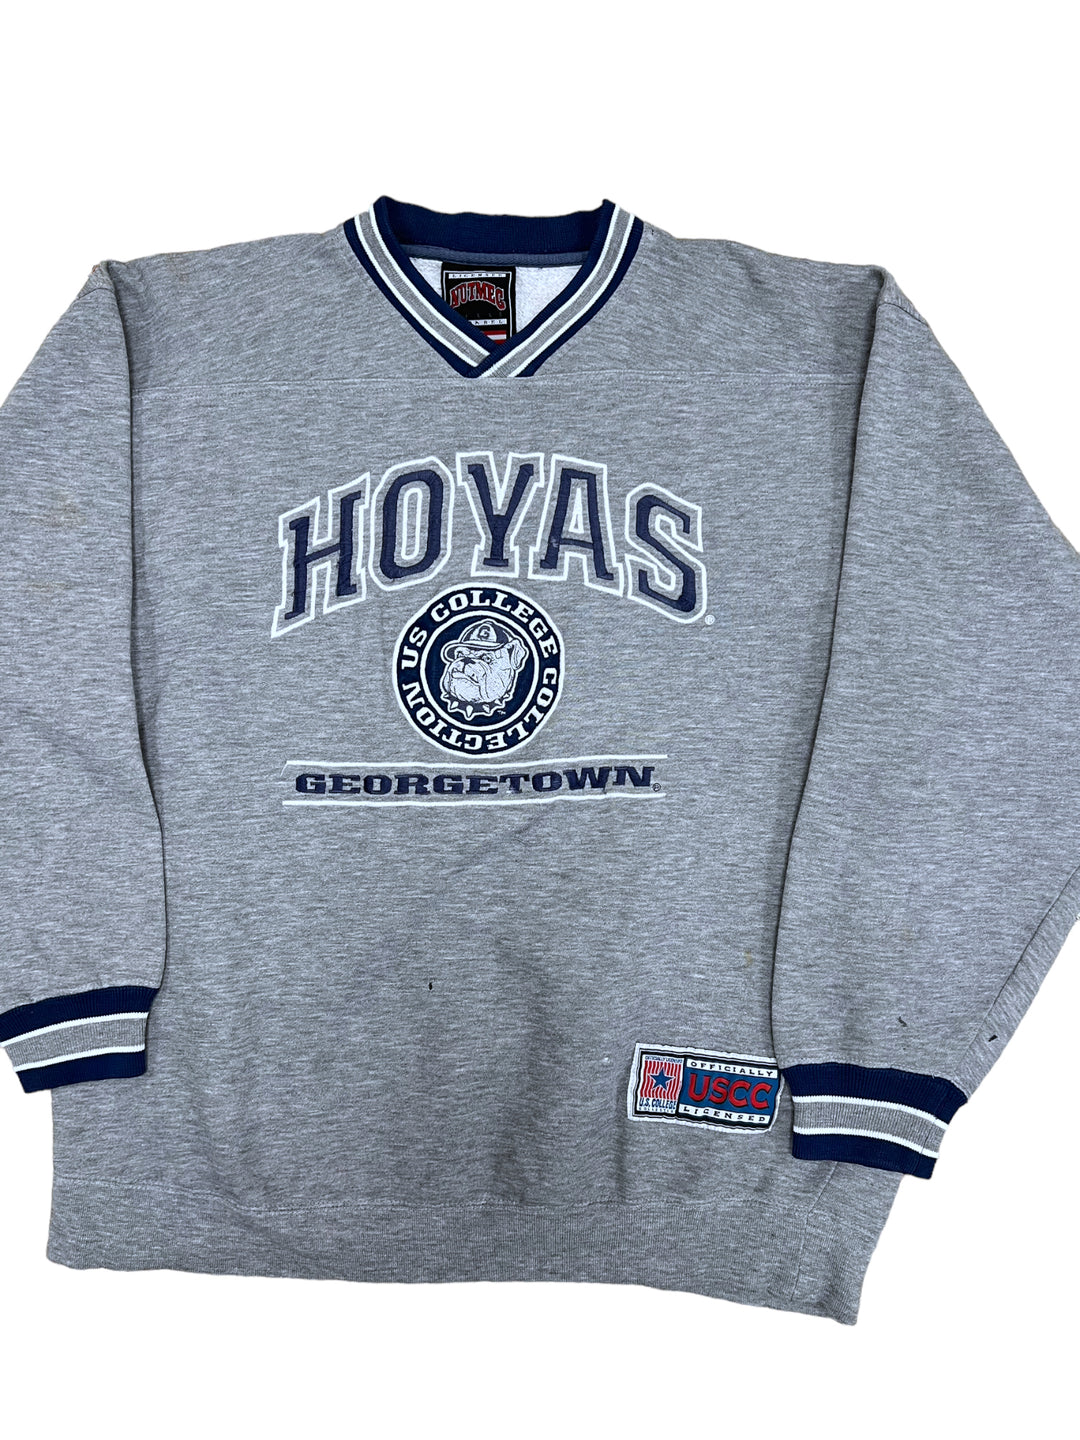 Nutmeg vintage Hoyas Georgetown University Sweatshirt Men’s Large